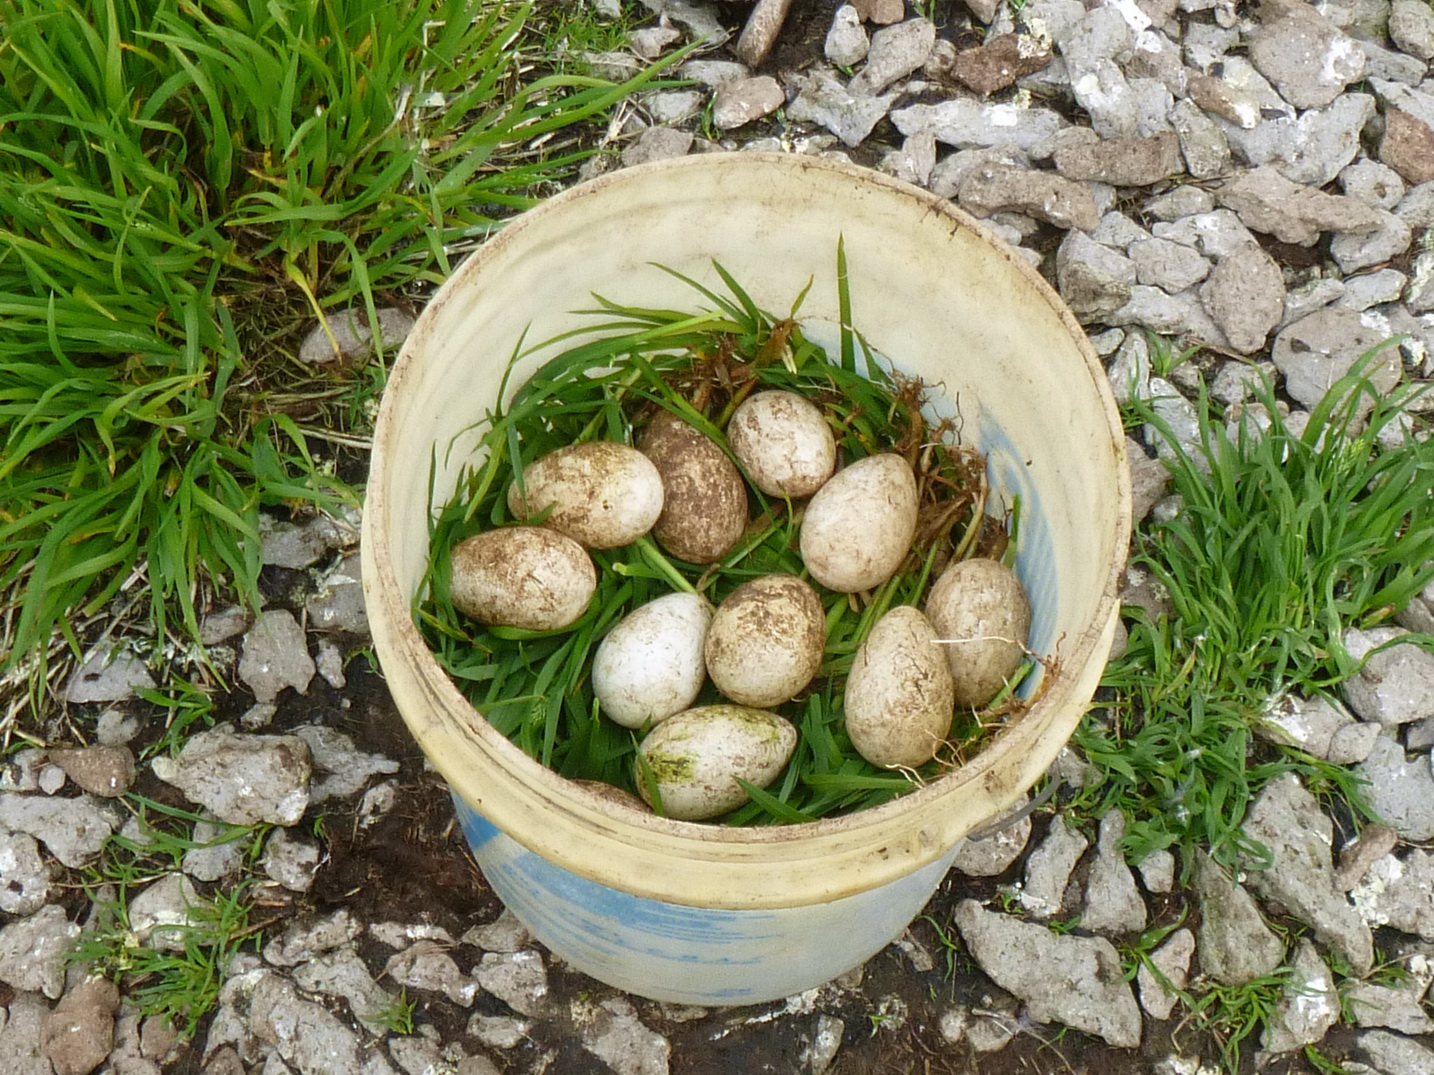 Яйца топорка перекладывают травой чтобы не побить их. Фото - заповедник "Командорский"